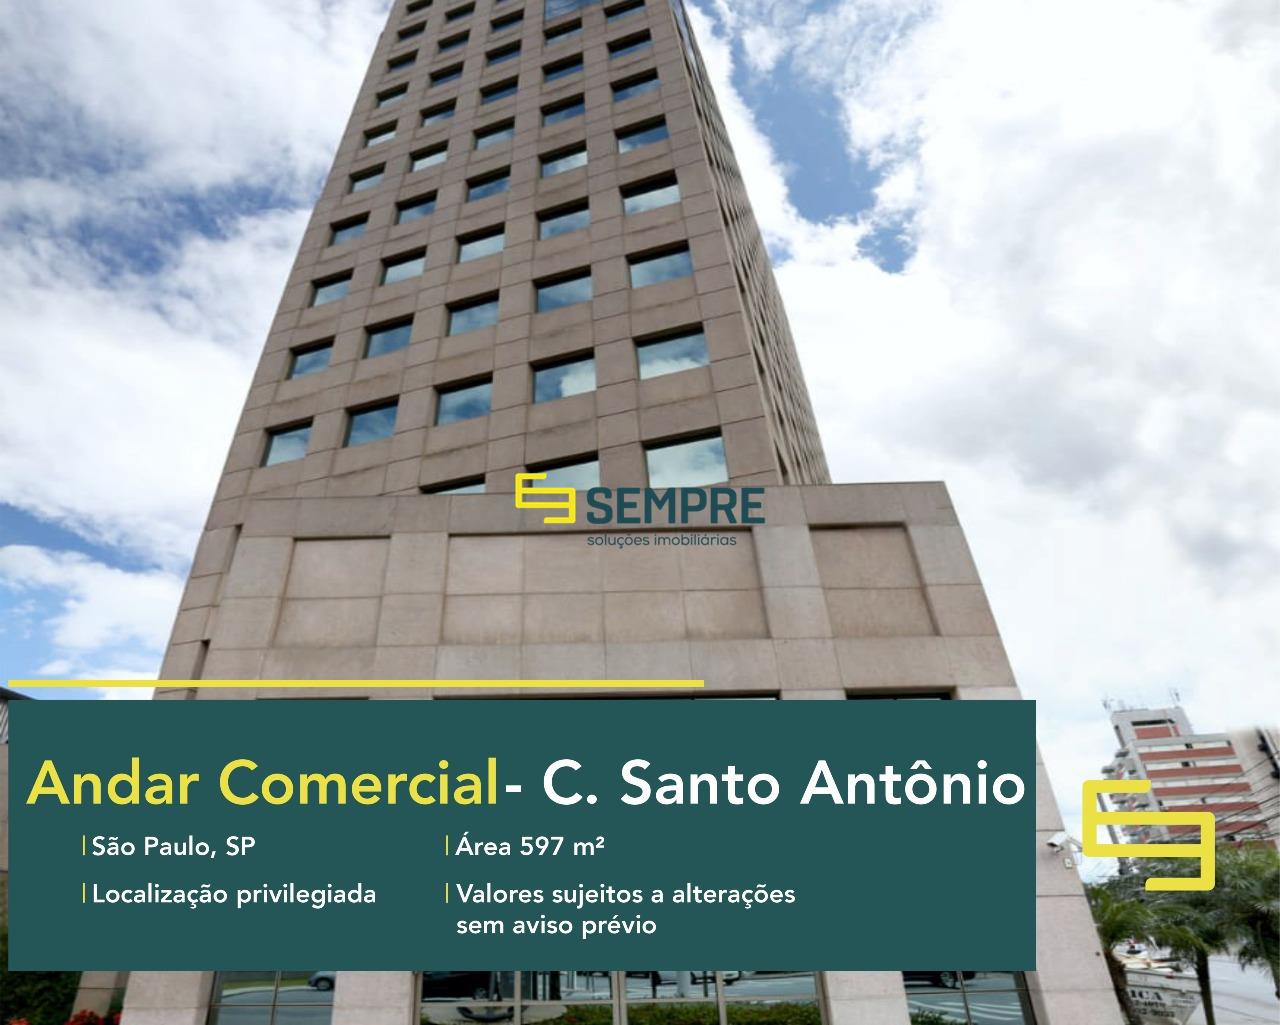 Andar comercial no Chácara Santo Antônio em São Paulo, excelente localização. O estabelecimento comercial conta com área 597 m².